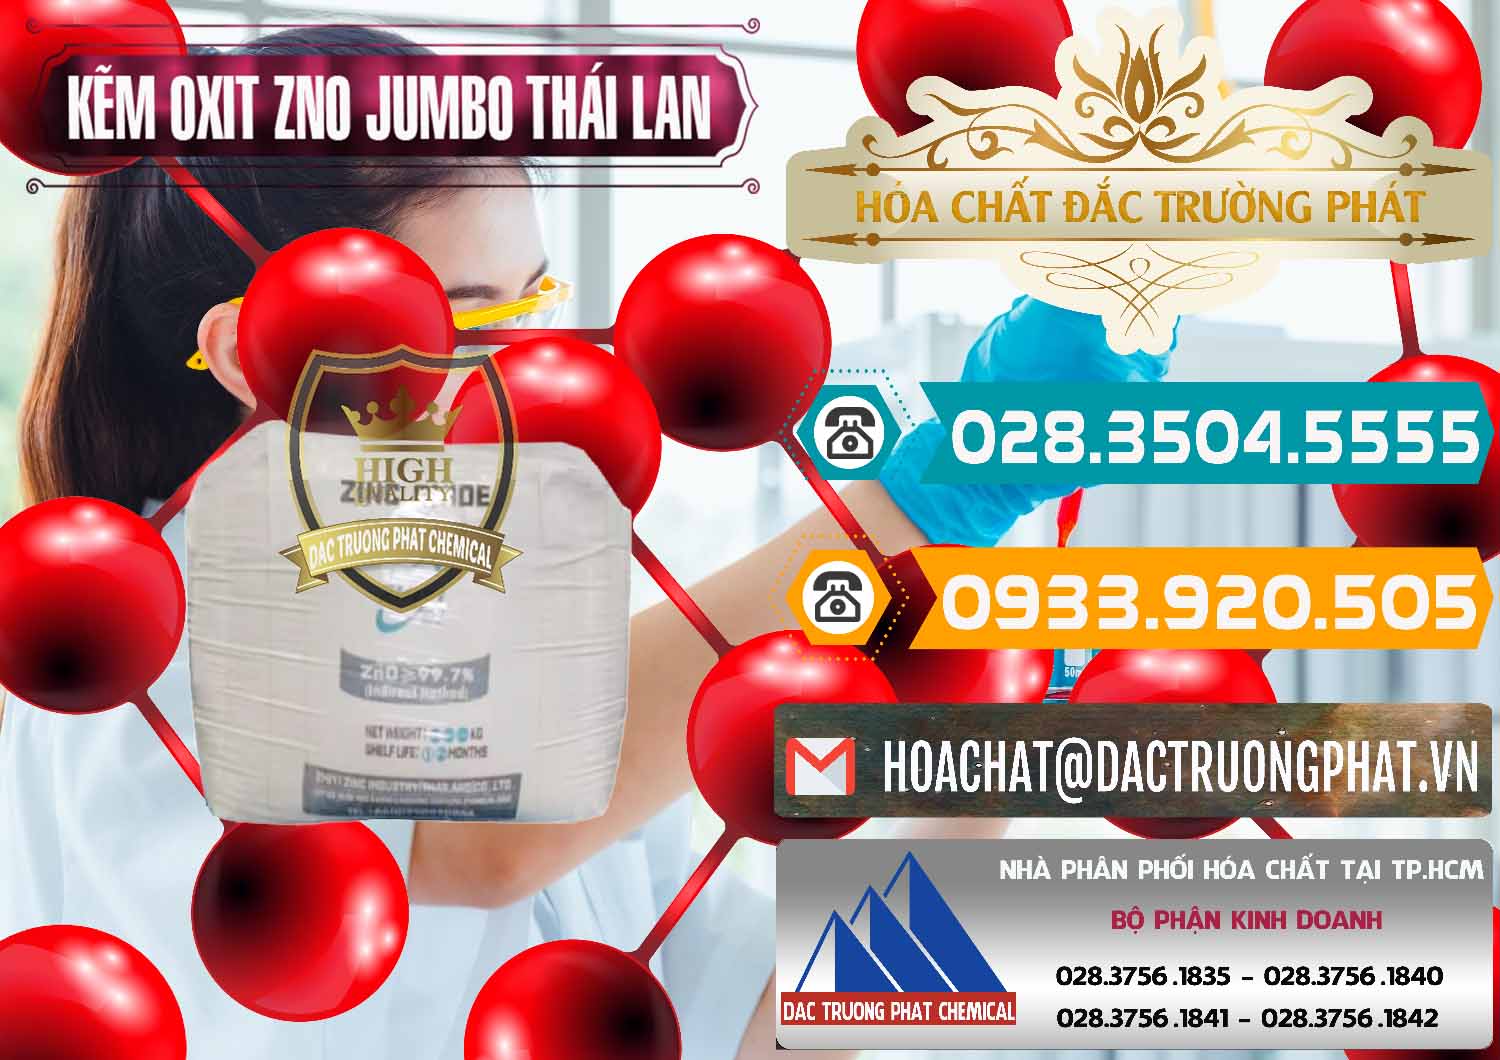 Nơi chuyên bán _ cung ứng Zinc Oxide - Bột Kẽm Oxit ZNO Jumbo Bành Thái Lan Thailand - 0370 - Cty chuyên cung cấp và bán hóa chất tại TP.HCM - congtyhoachat.vn